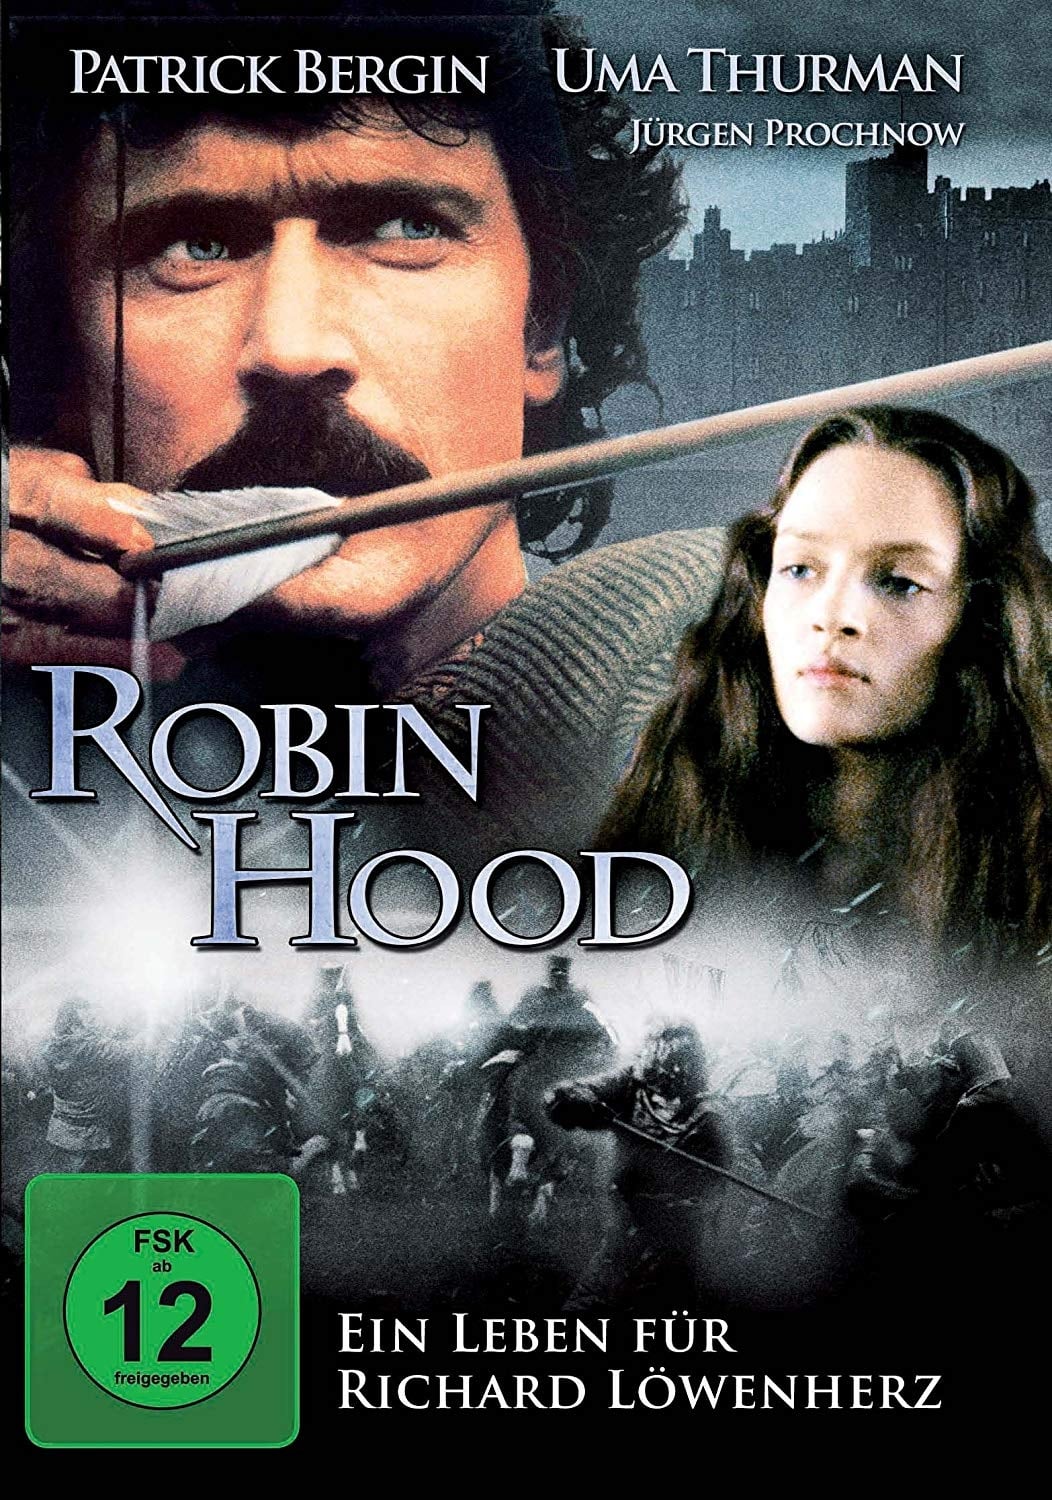 Plakat von "Robin Hood - Ein Leben für Richard Löwenherz"